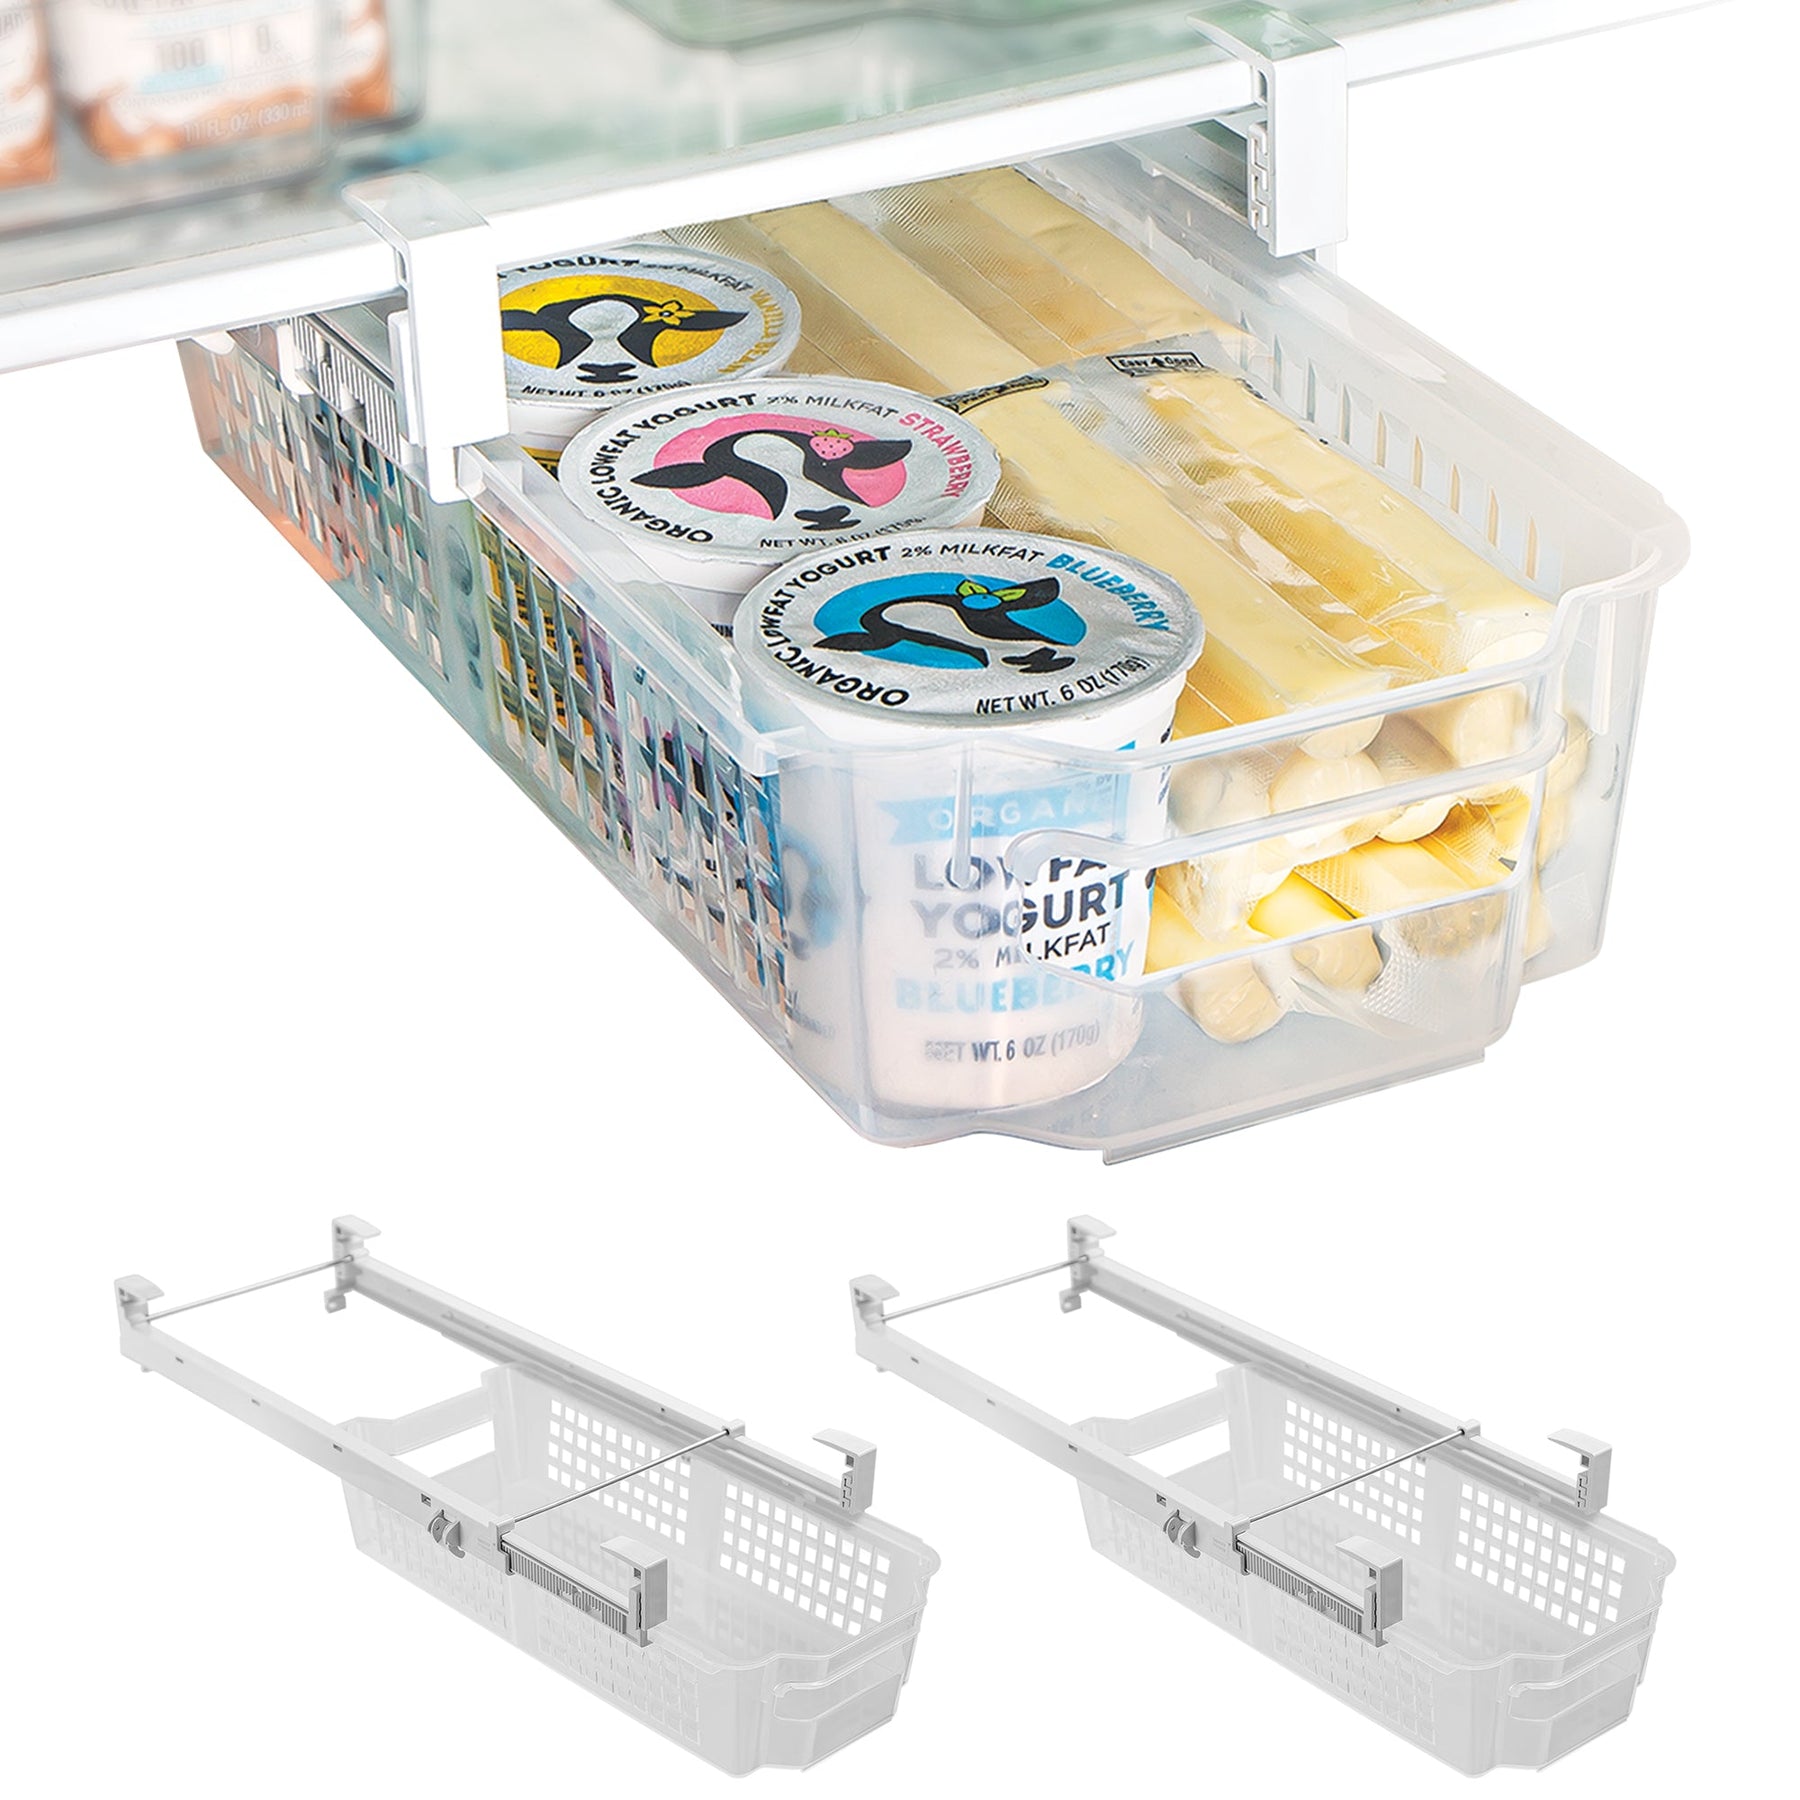 https://www.shopsmartdesign.com/cdn/shop/products/adjustable-pull-out-refrigerator-drawer-multiple-sizes-smart-design-kitchen-8443498as3-incrementing-number-508305_1800x1800.jpg?v=1679345300